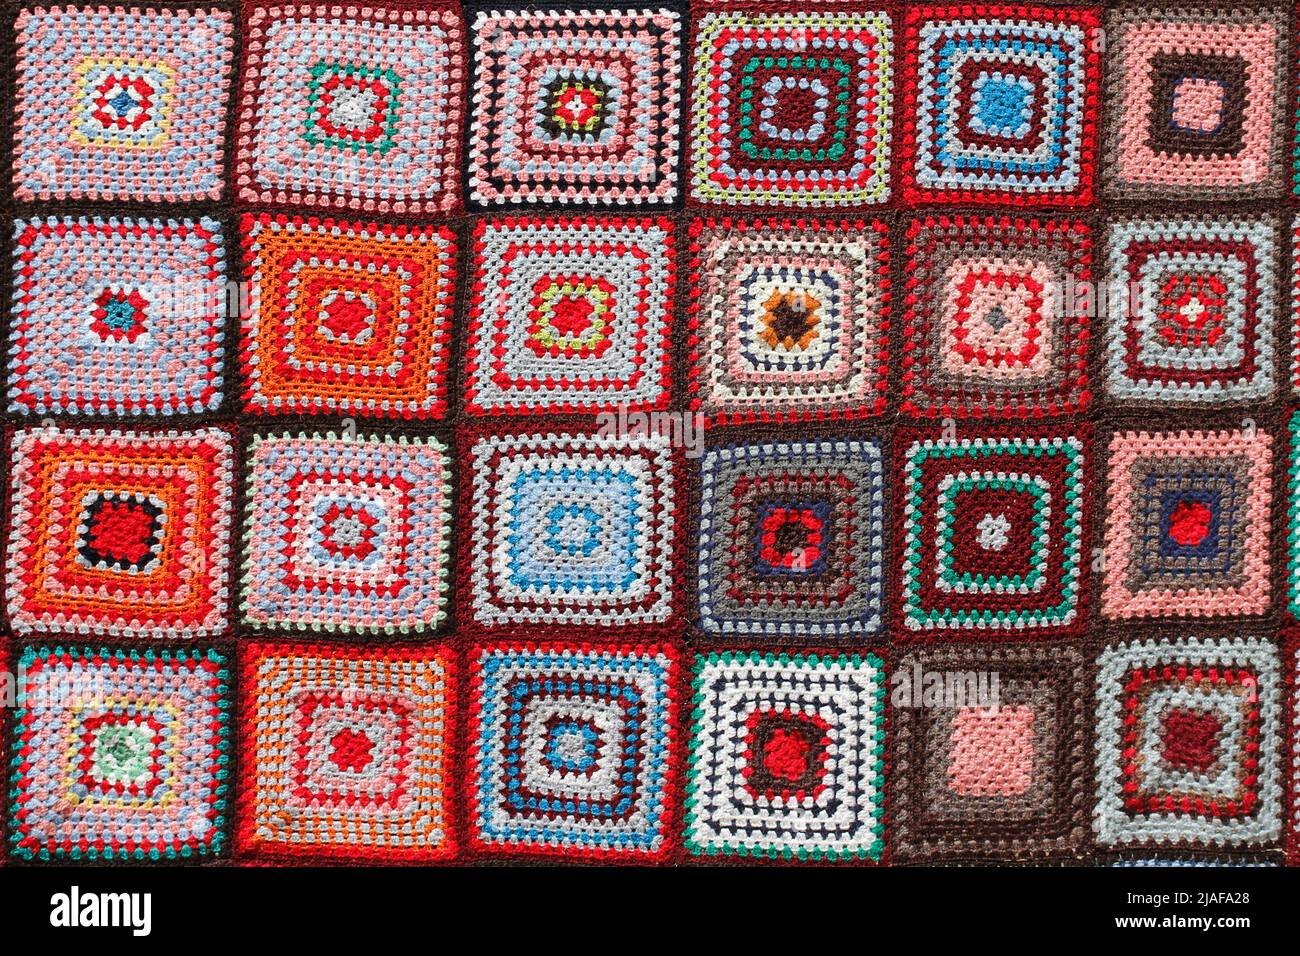 Dettaglio di una coperta di lana multicolore a mosaico. Foto Stock